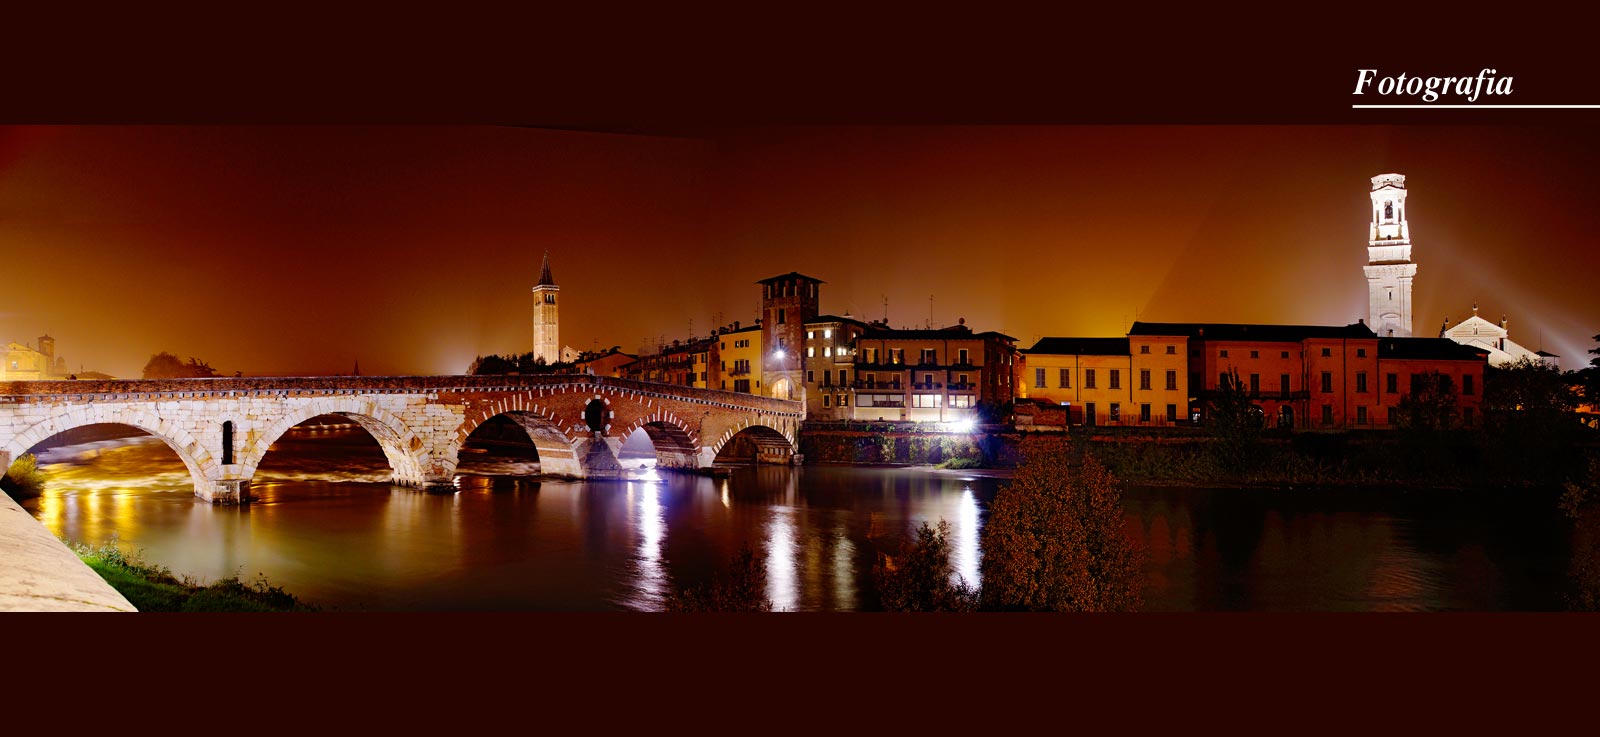 Fotografia Verona